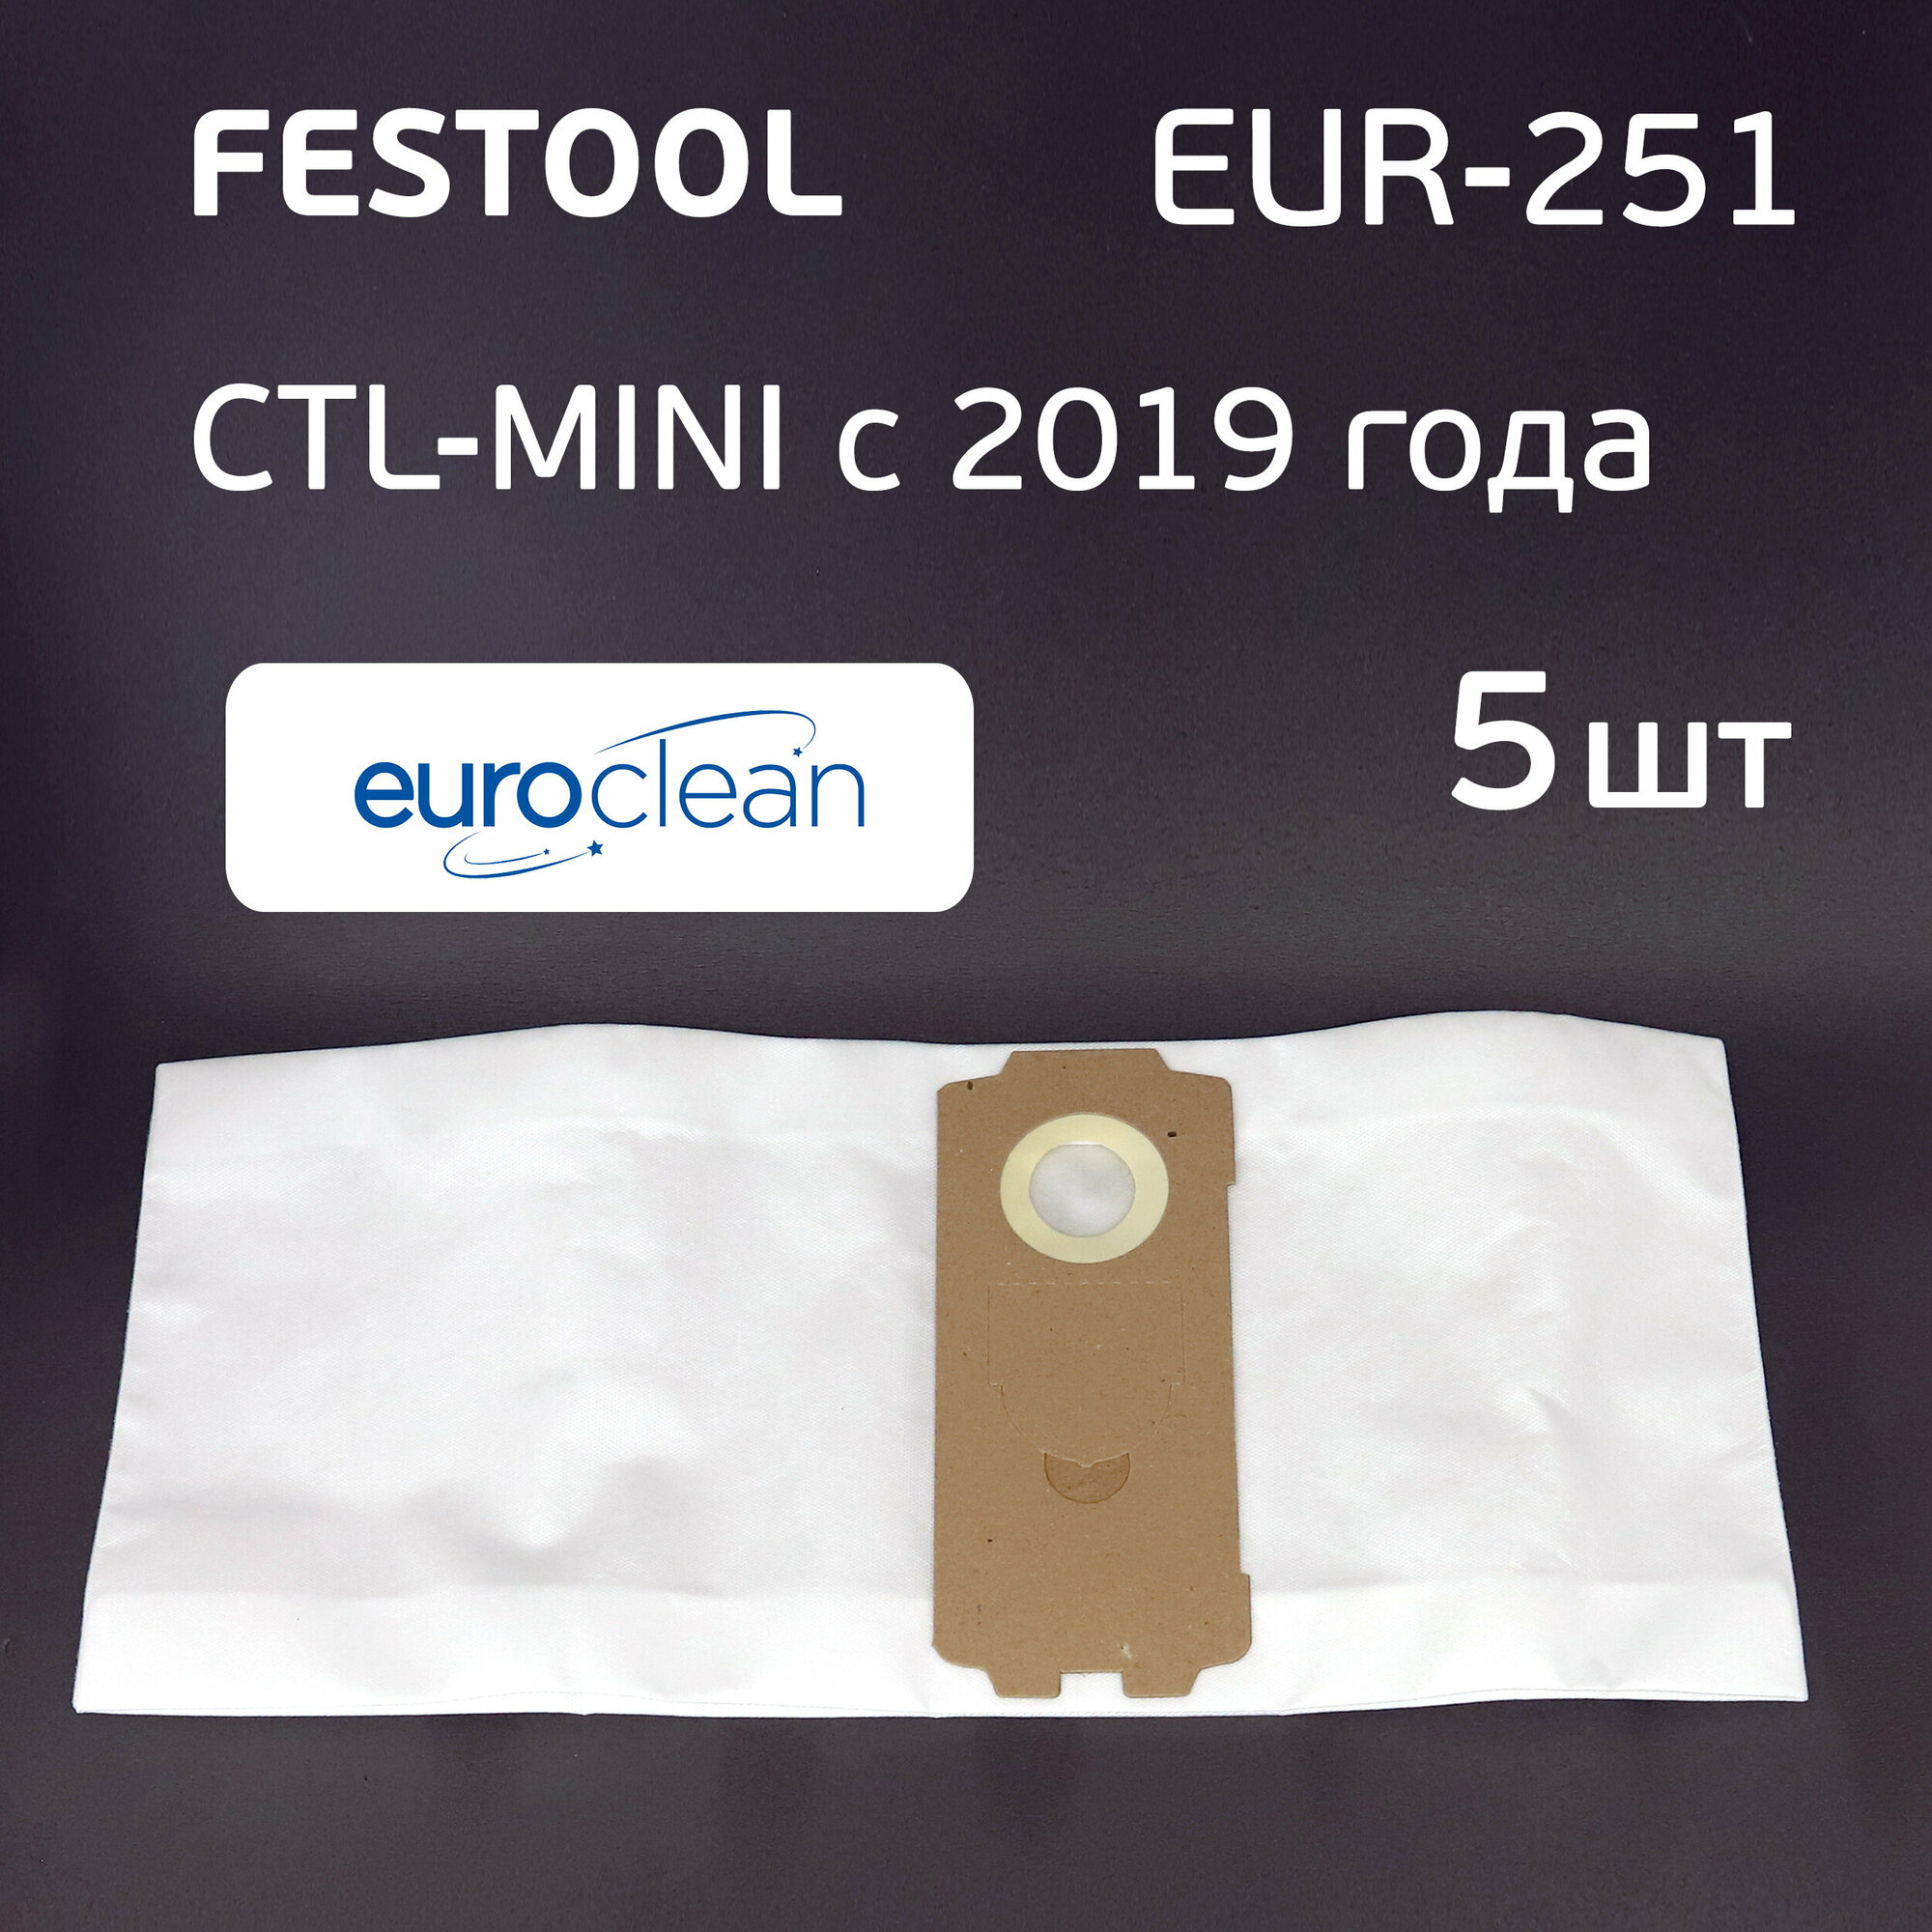 Мешок для пылесоса Festool (5шт) CTL-MINI с 2019 г, синтетический, EUR-251/5, одноразовый